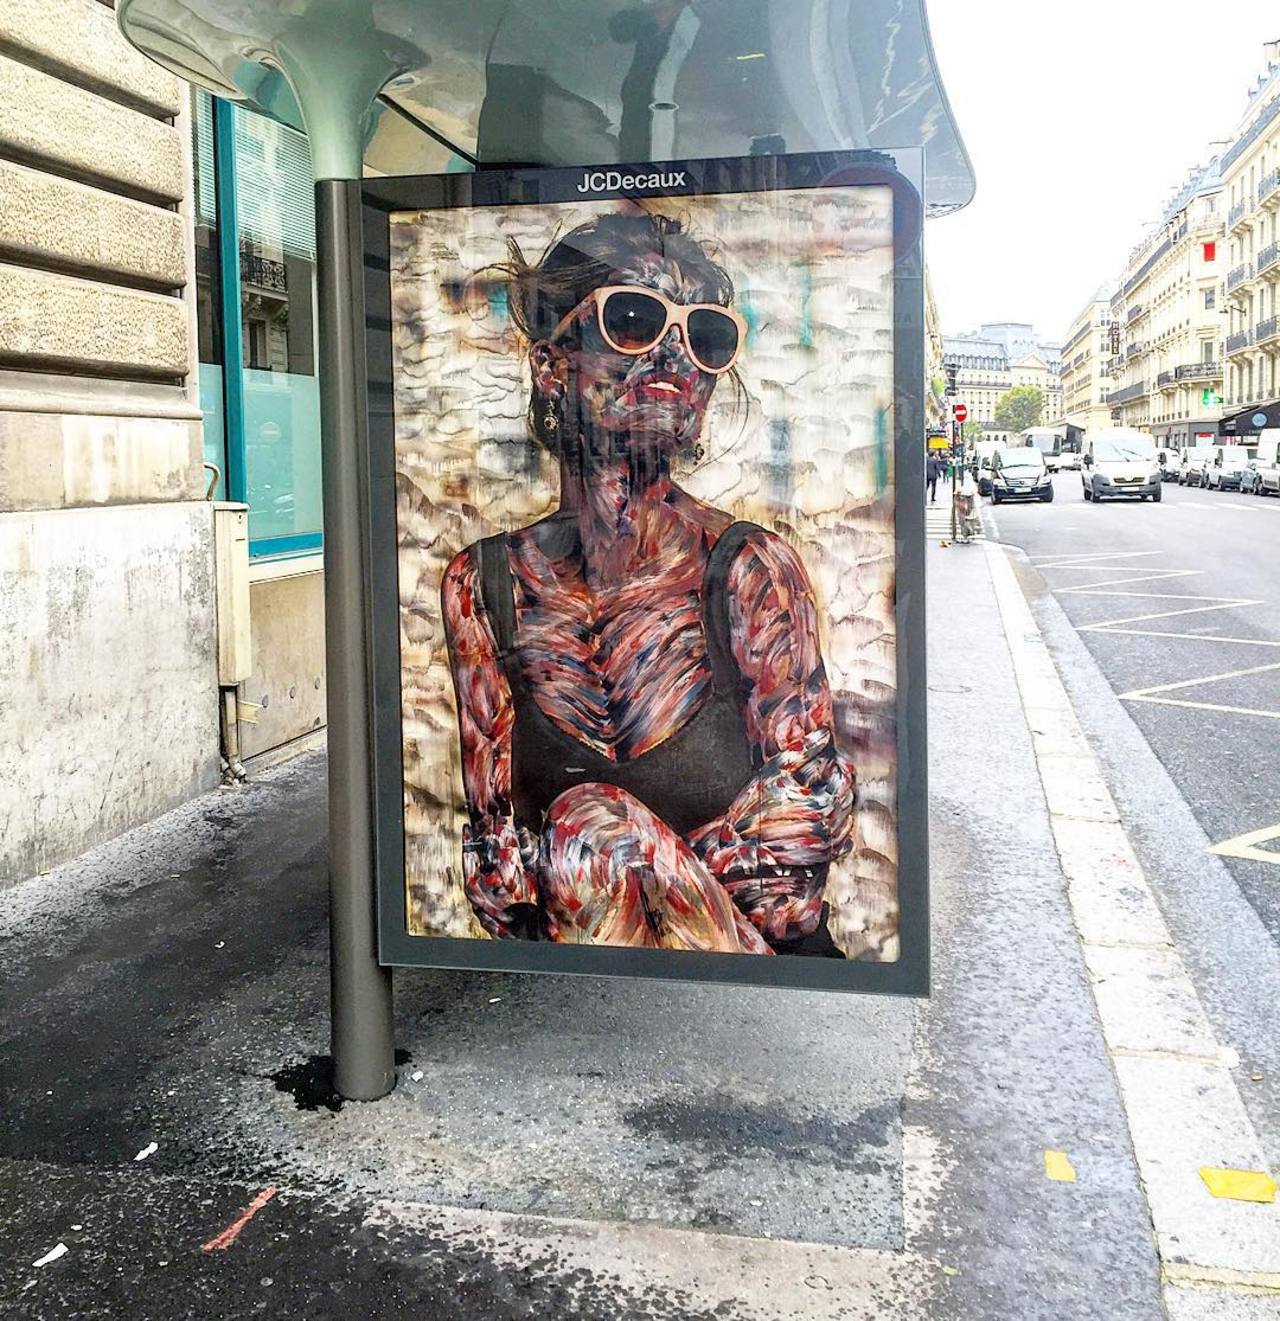 #Paris #graffiti photo by @hookedblog http://ift.tt/1VGeVyP #StreetArt http://t.co/uVANAgIDm9